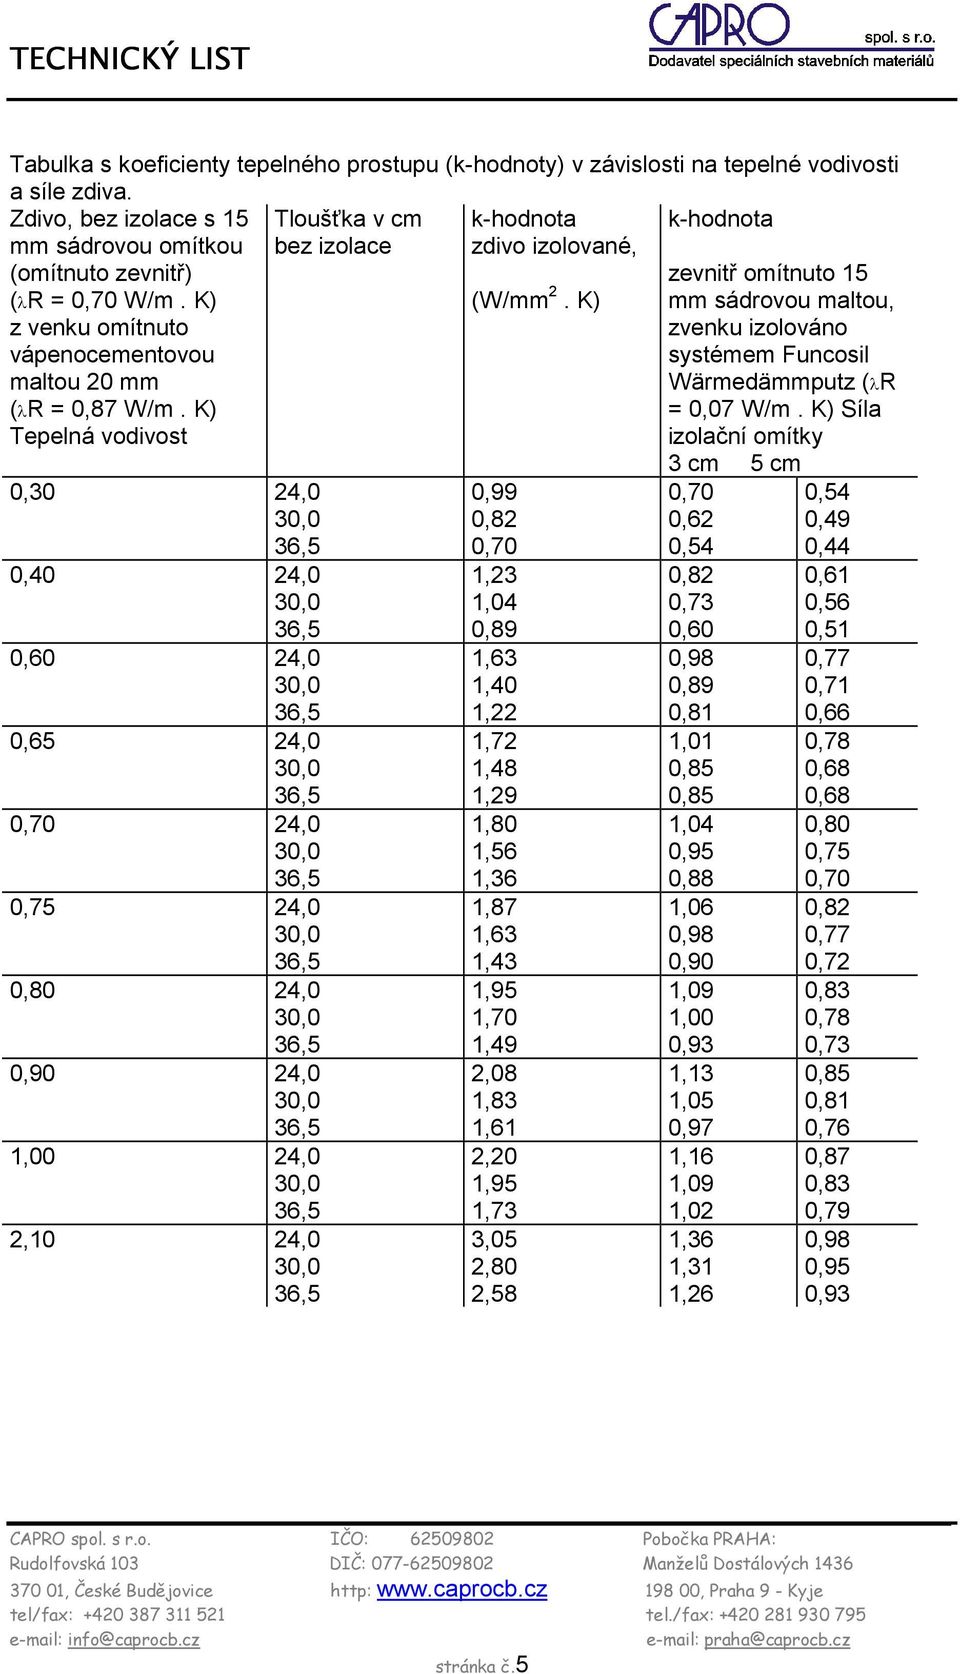 K) k-hodnota zevnitř omítnuto 15 mm sádrovou maltou, zvenku izolováno systémem Funcosil Wärmedämmputz (λr = 0,07 W/m.